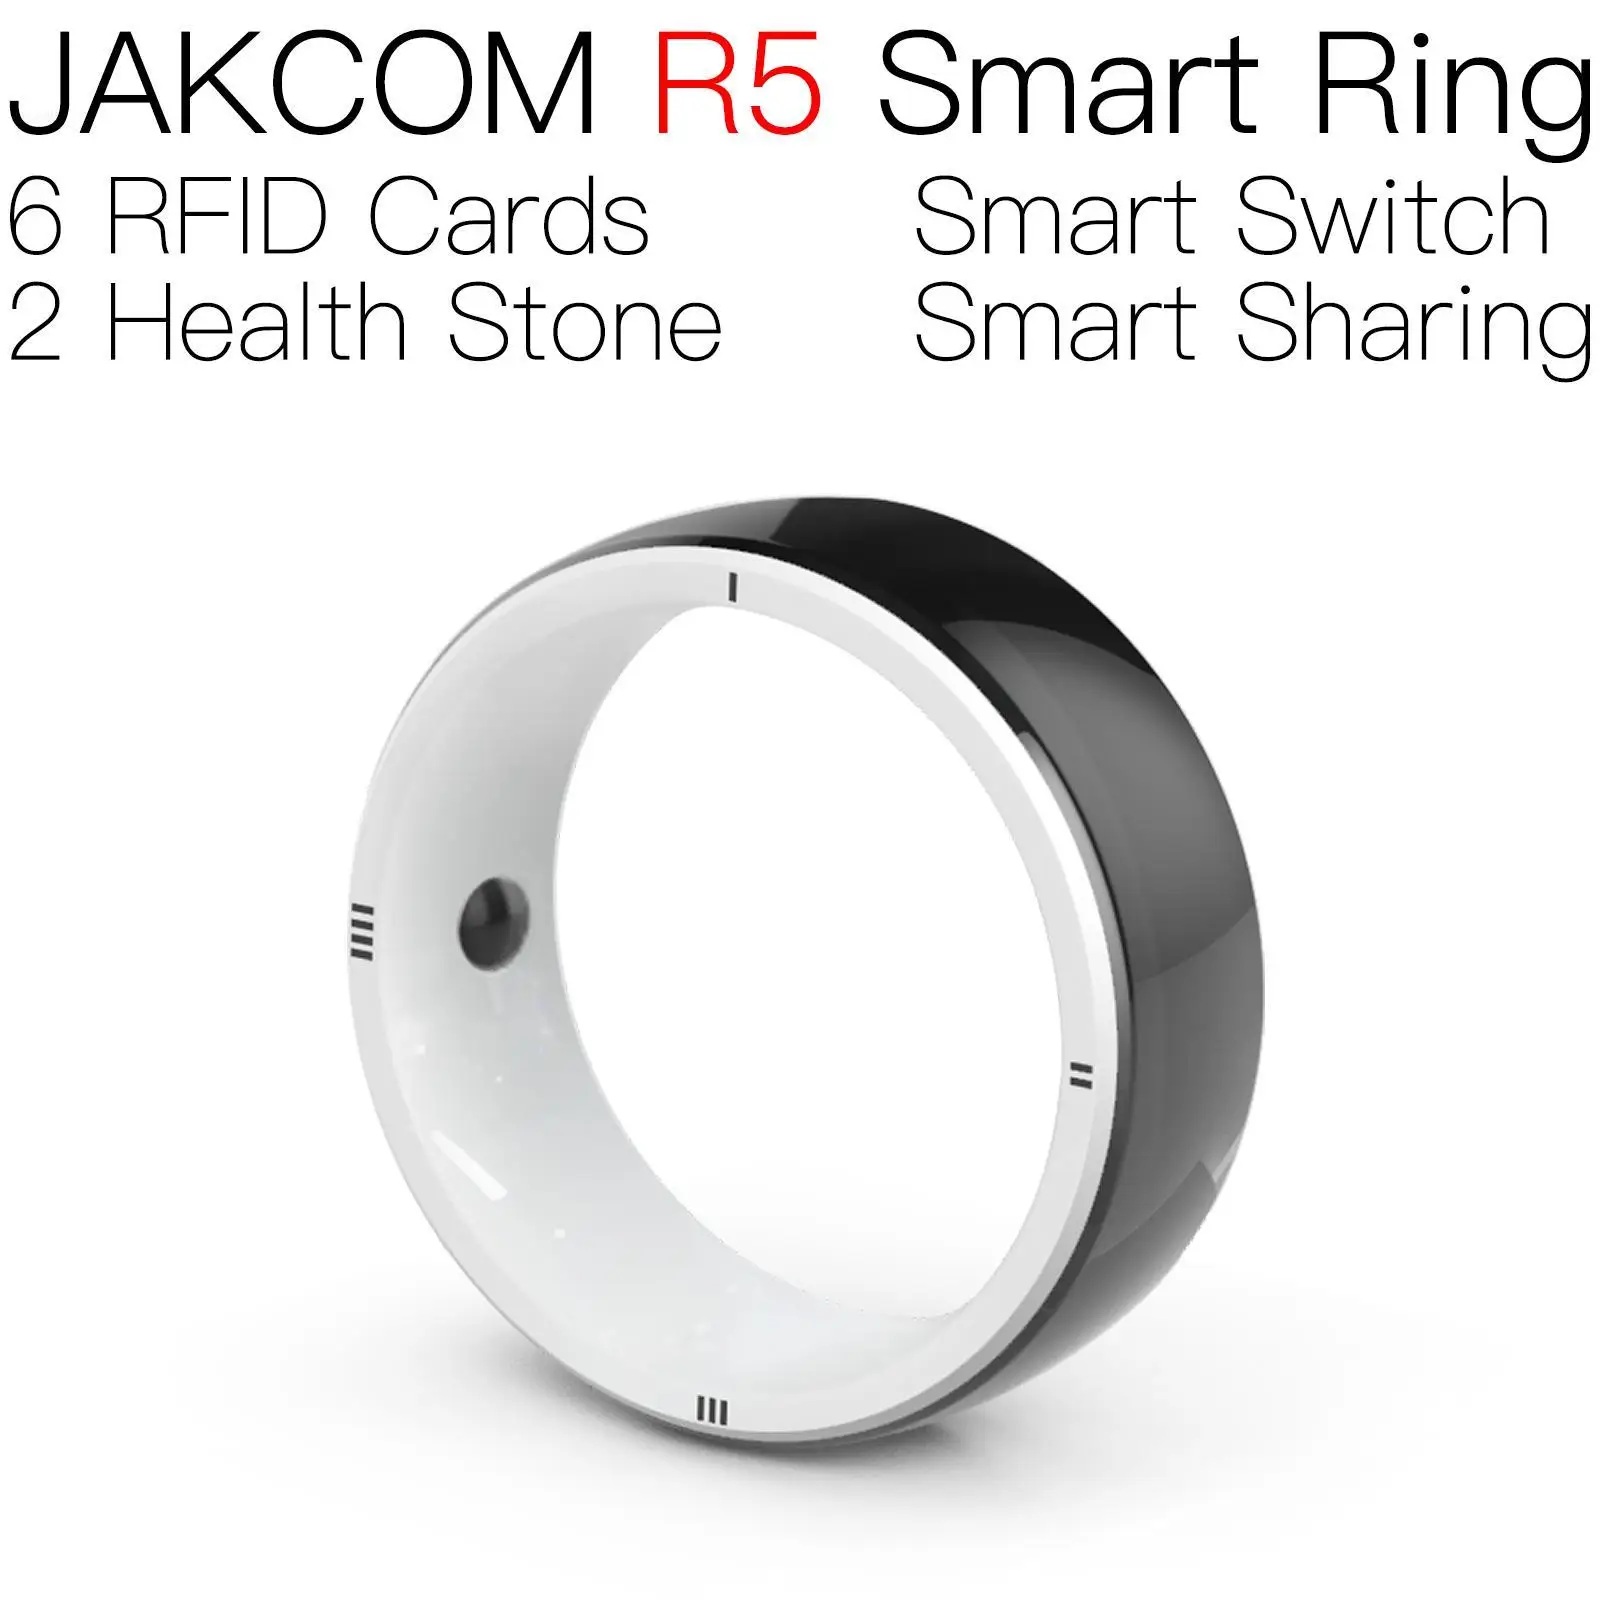 

Смарт-кольцо JAKCOM R5, супер значение как 40k rfid mct cuid, антиметаллическая наклейка 6 в 1, бирка для ключа, карта, чип 125 кГц uhf active